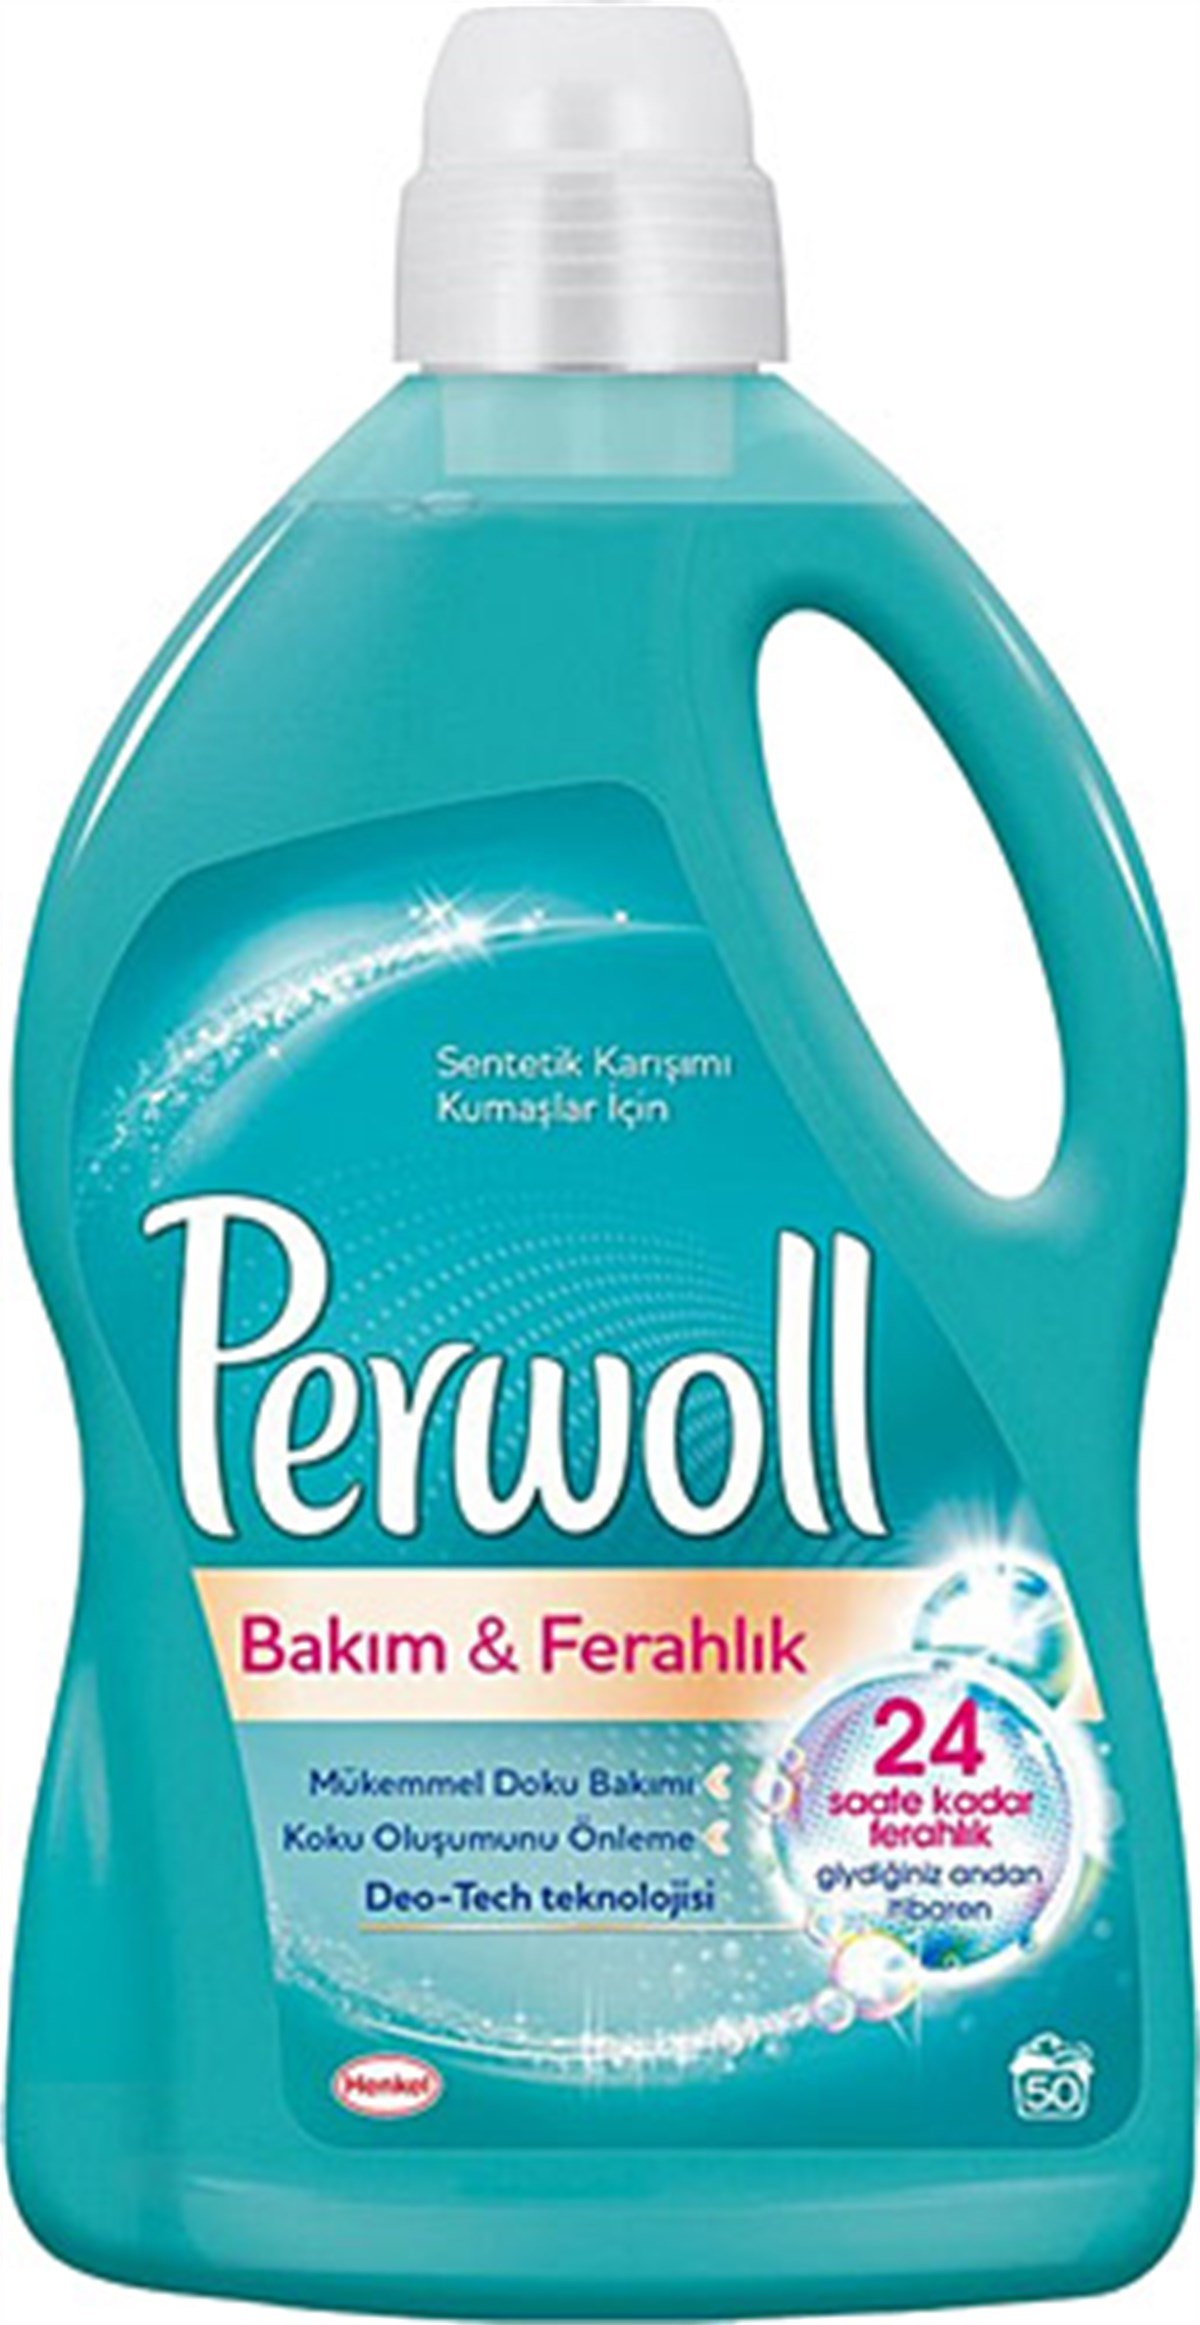 Perwoll Hassa Bakım&Ferahlık Sıvı Deterjan 3 Lt İstanbul İçi Online  Siparişle Kapında - Üçler Market